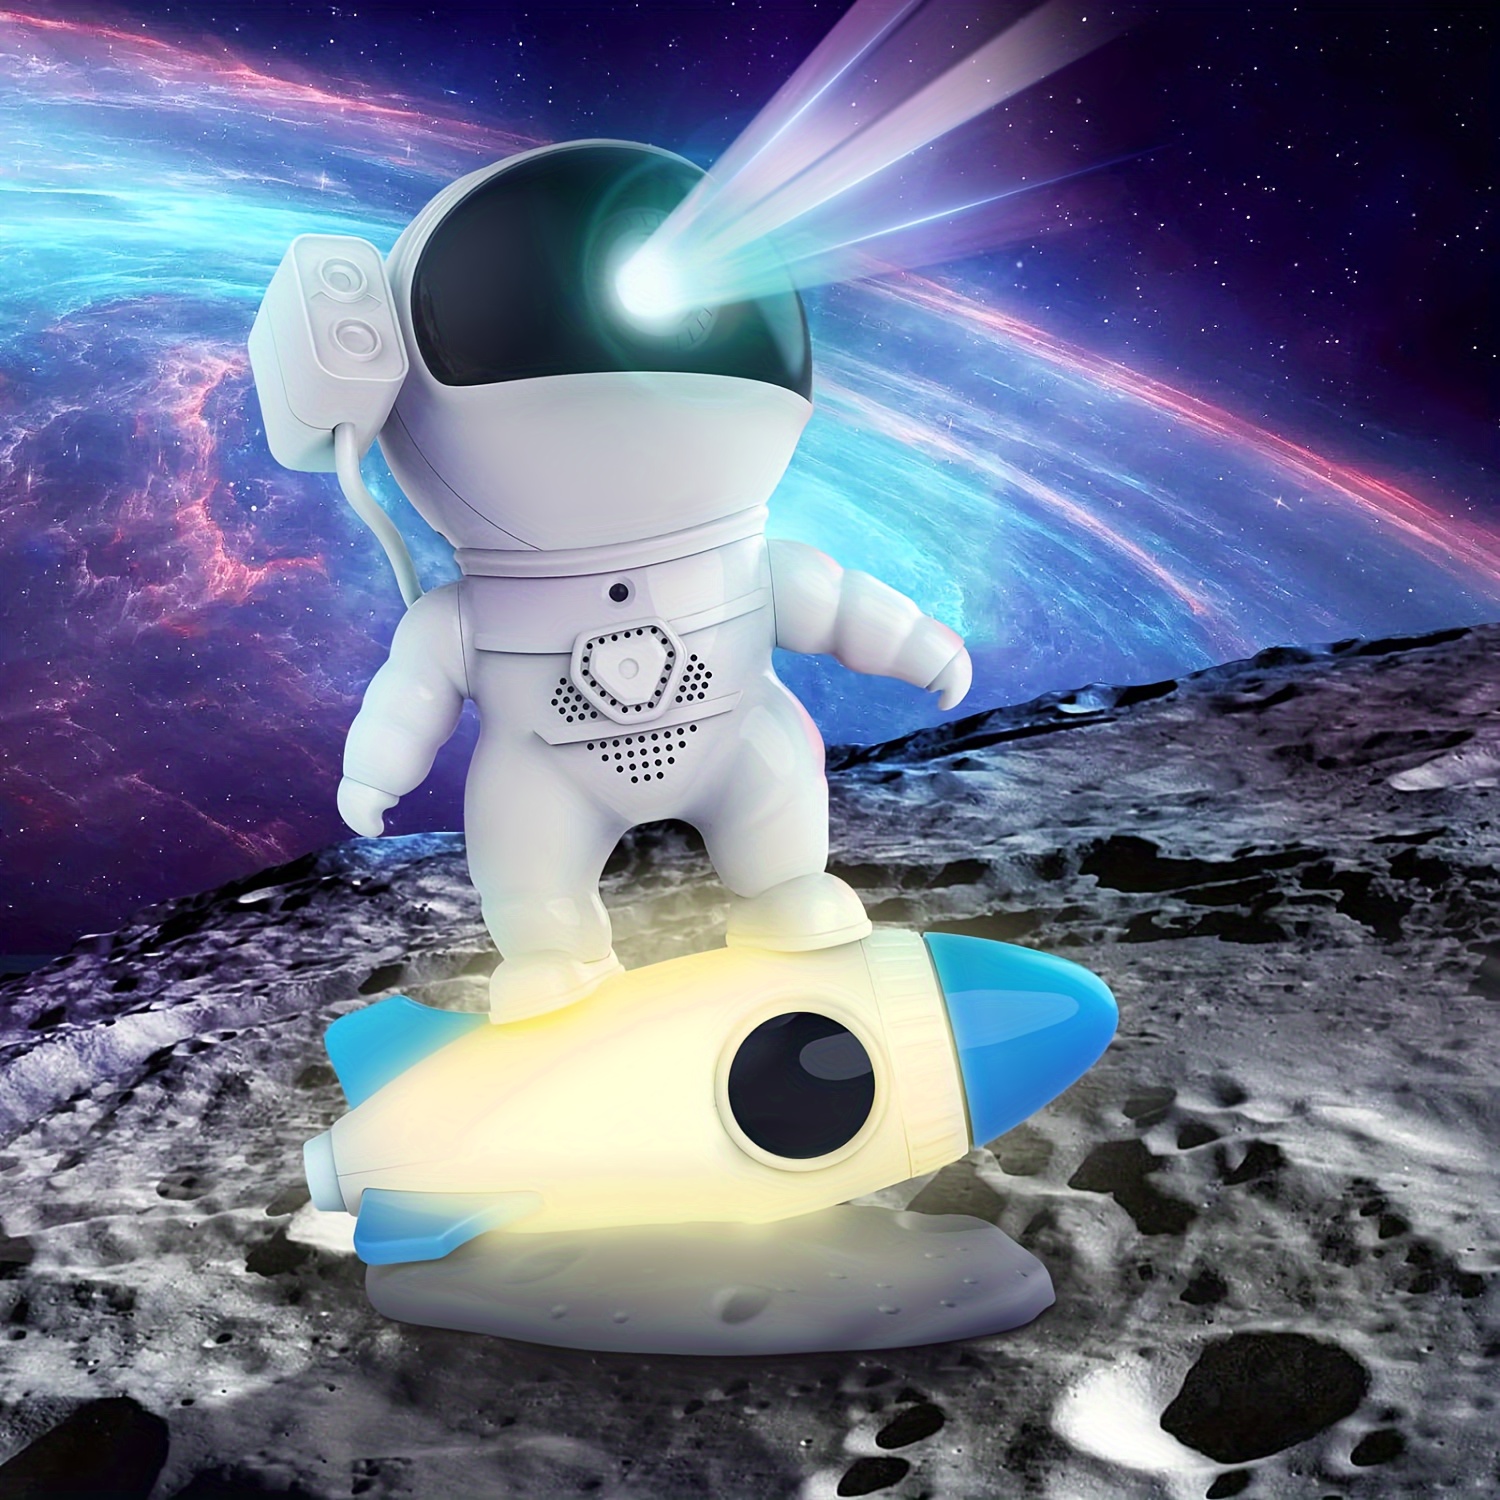  Proyector de astronauta de galaxia, proyector de luz nocturna  estrellada, proyector de luz de astronauta con nebulosa, temporizador y  control remoto, alimentado por USB, proyector de luz espacial ajustable de  360°